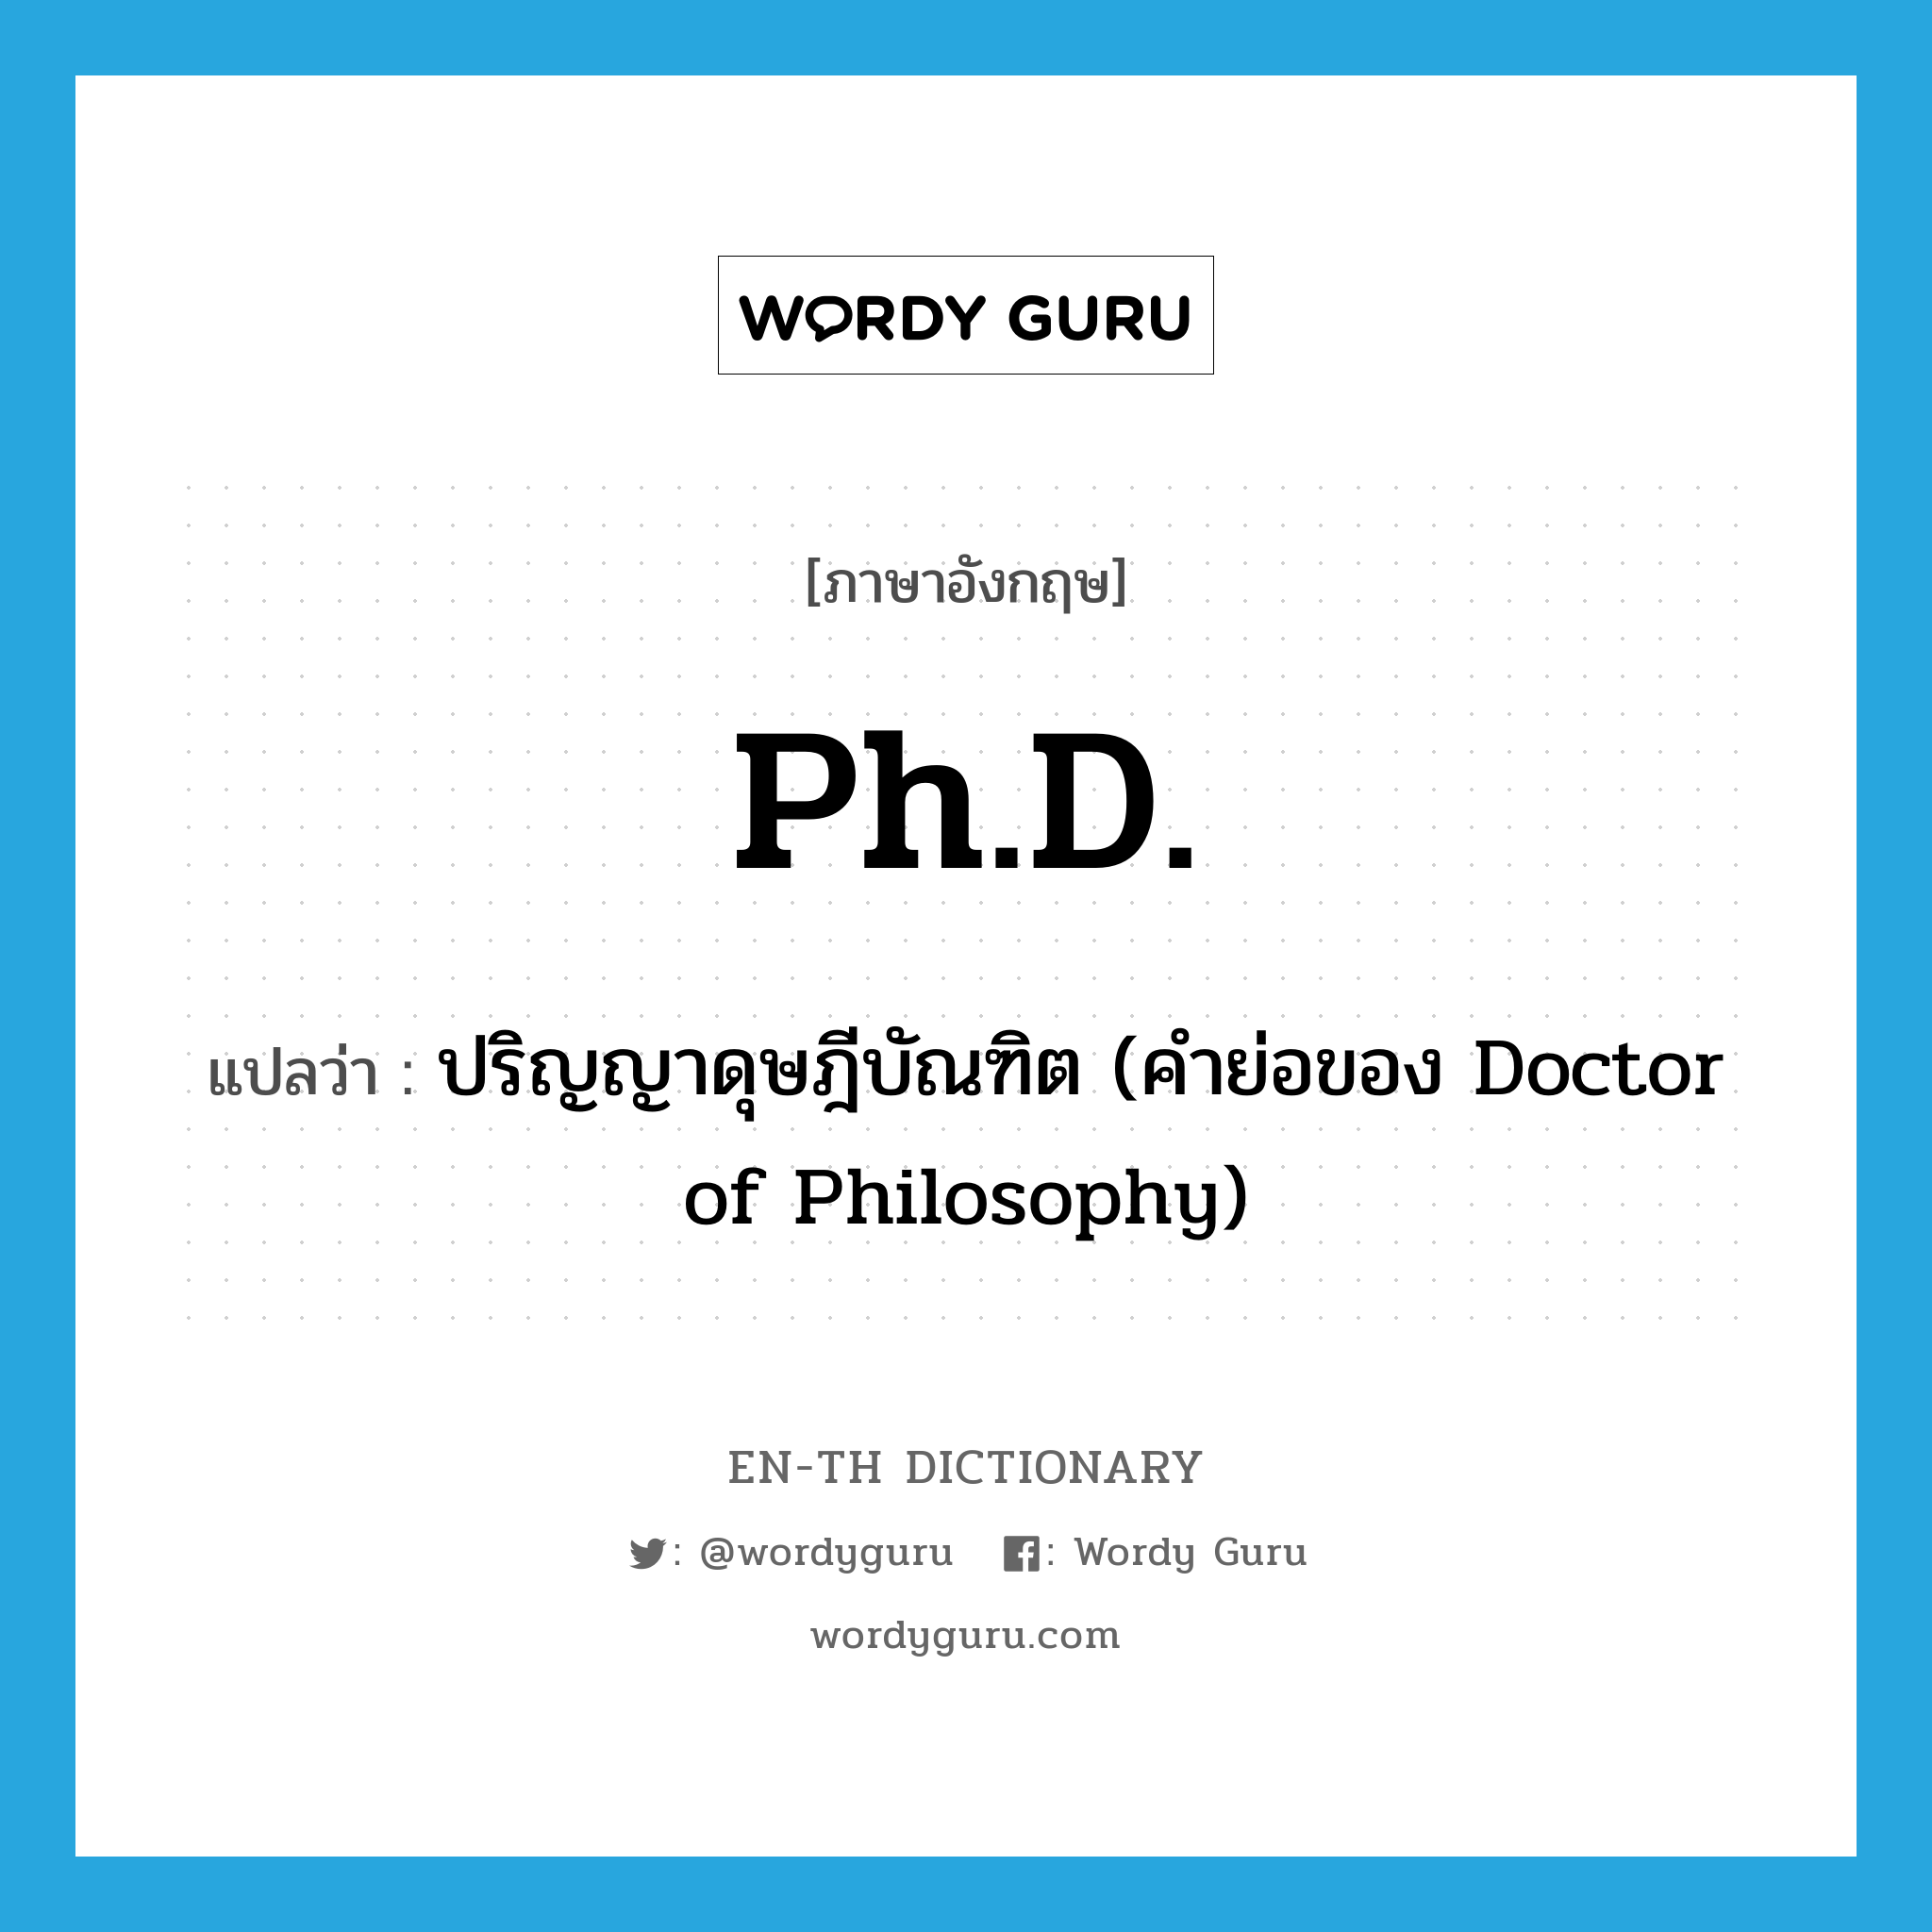 ปริญญาดุษฎีบัณฑิต (คำย่อของ Doctor of Philosophy) ภาษาอังกฤษ?, คำศัพท์ภาษาอังกฤษ ปริญญาดุษฎีบัณฑิต (คำย่อของ Doctor of Philosophy) แปลว่า Ph.D. ประเภท ABBR หมวด ABBR